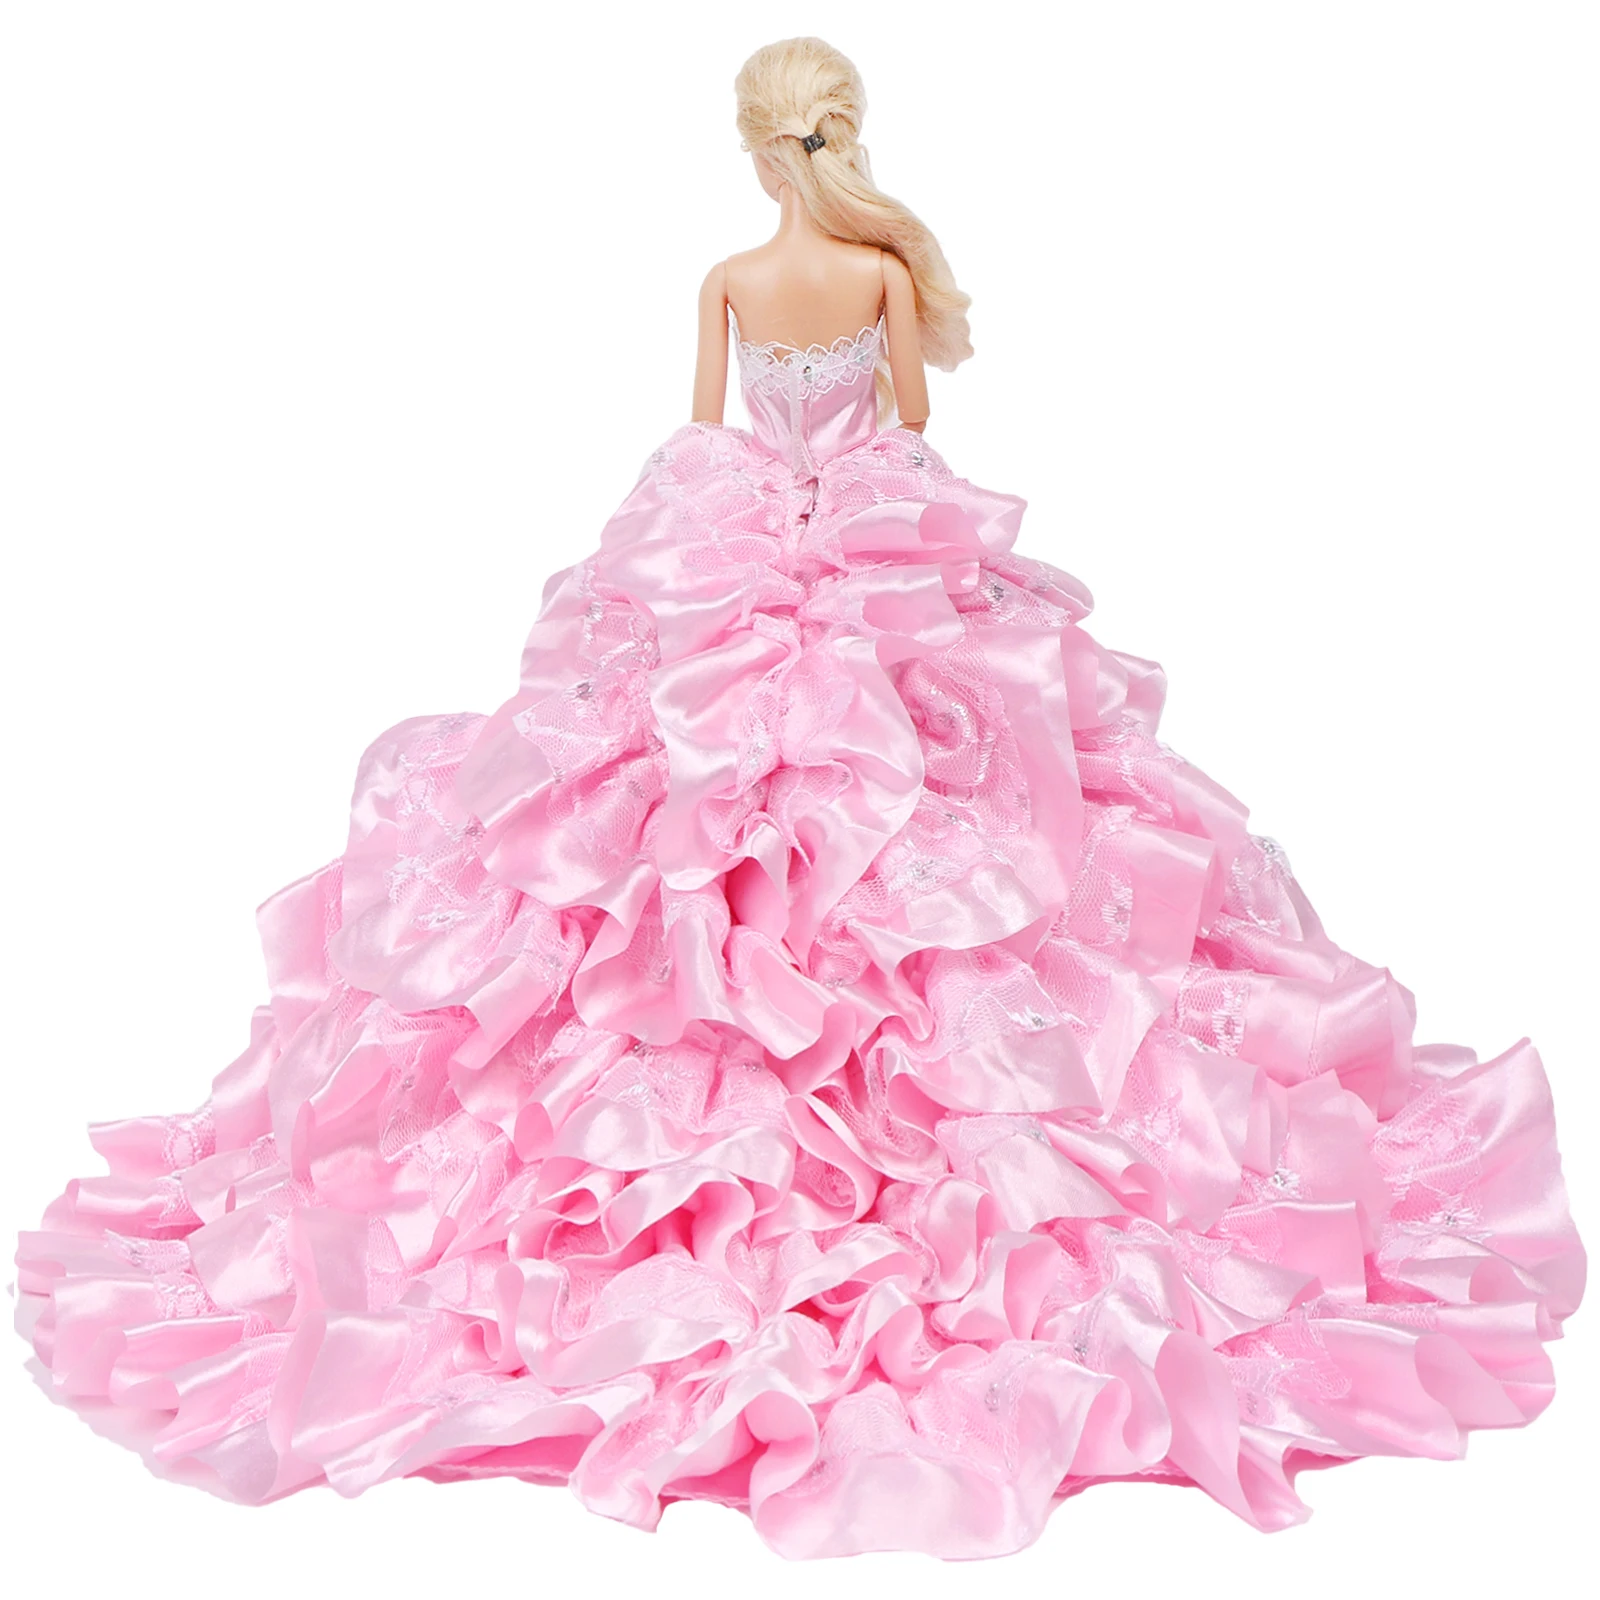 1 комплект, розовое свадебное платье, юбка со шлейфом, многослойное бальное платье, праздничная одежда, аксессуары для кукольного домика, одежда принцессы для куклы Барби